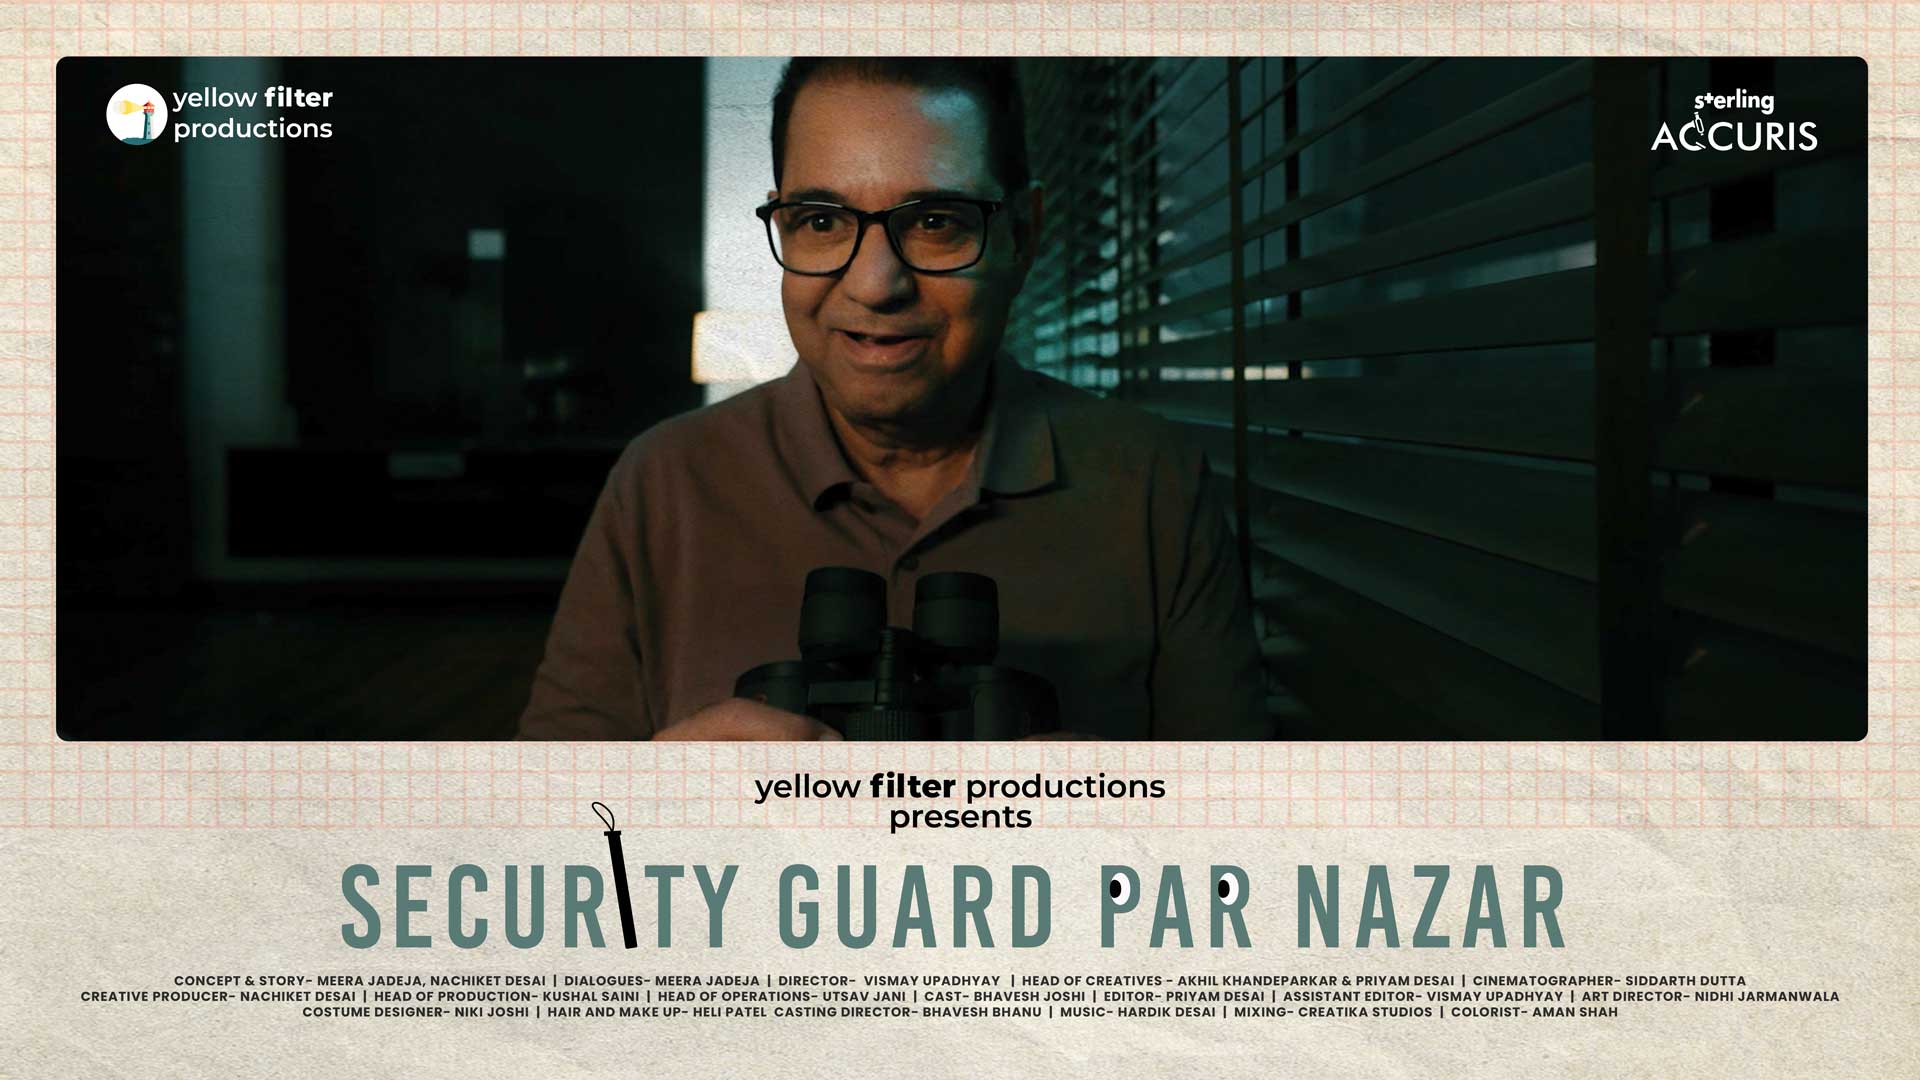 Sterling Accuris | Security Guard Par Nazar